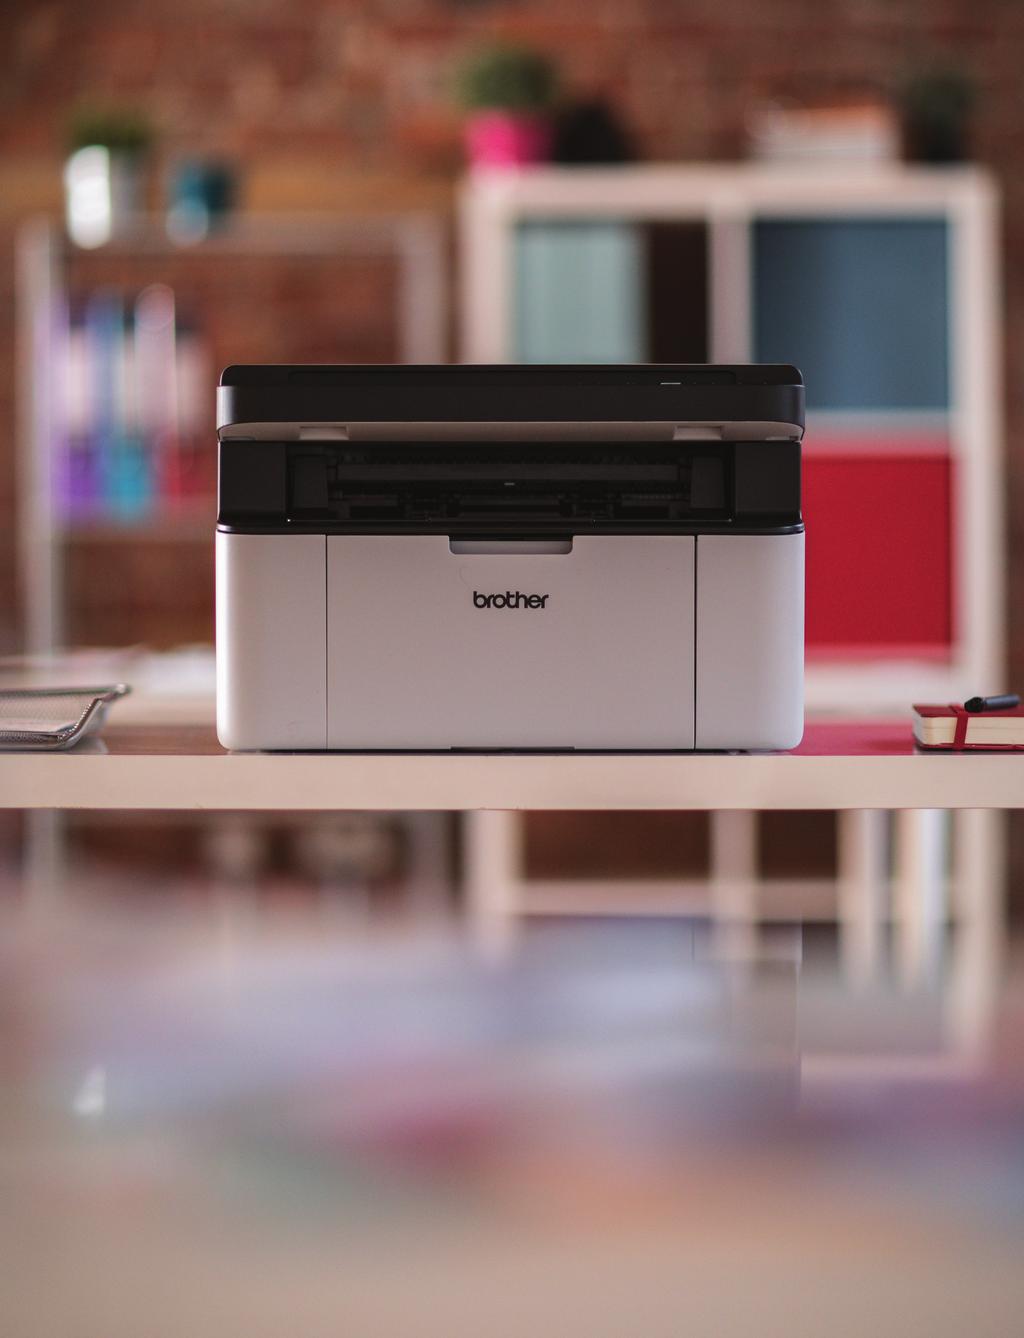 BOX Compact 3-in-1 mono laser printer